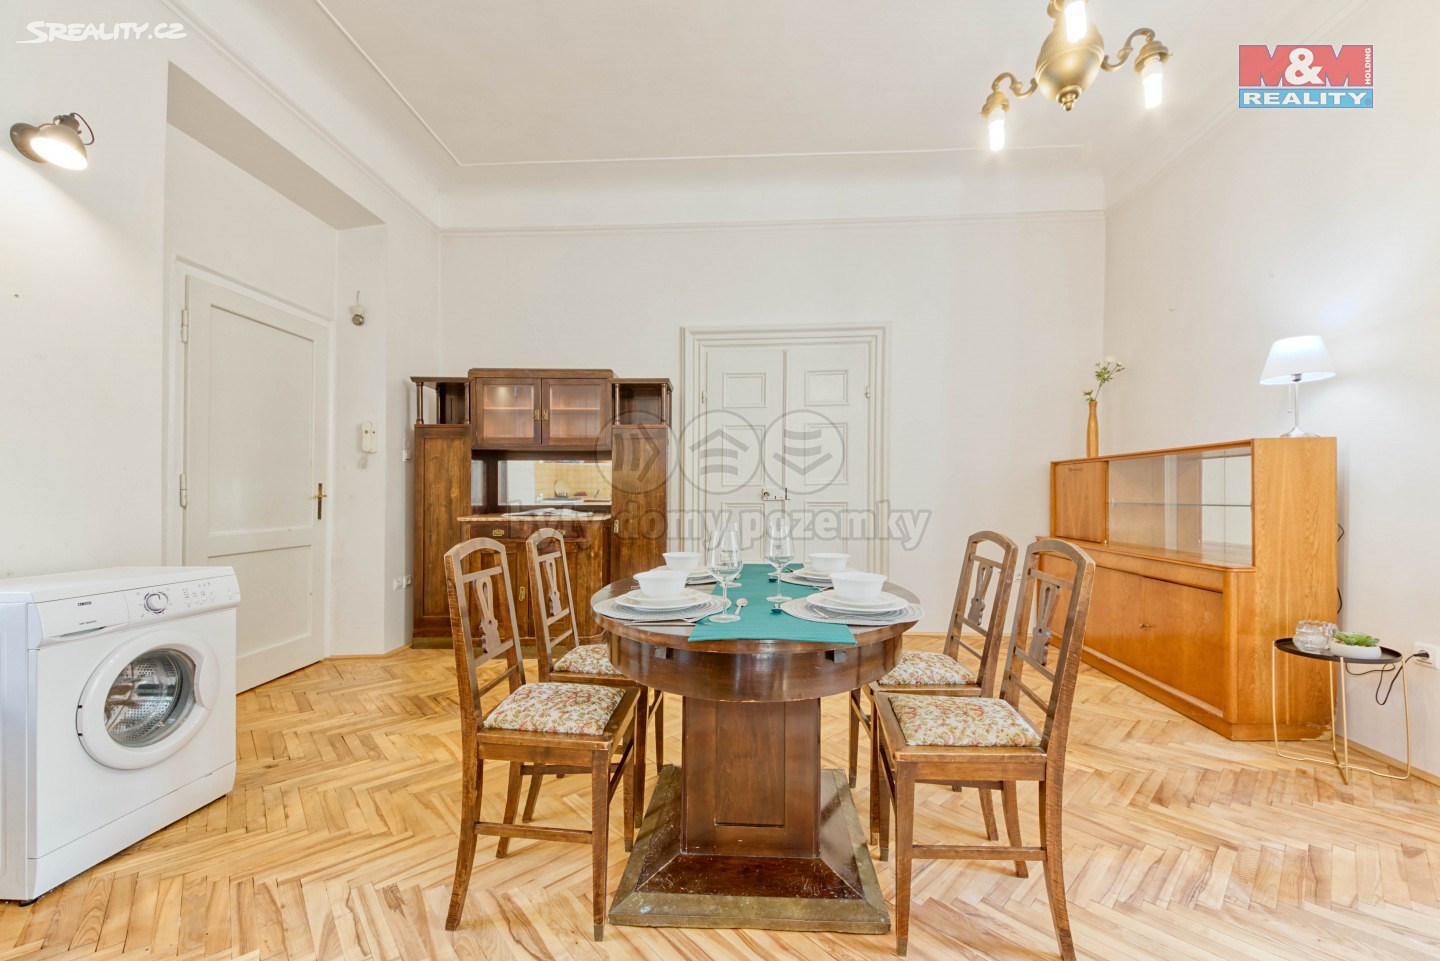 Prodej bytu 2+kk 54 m², Sněmovní, Praha 1 - Malá Strana